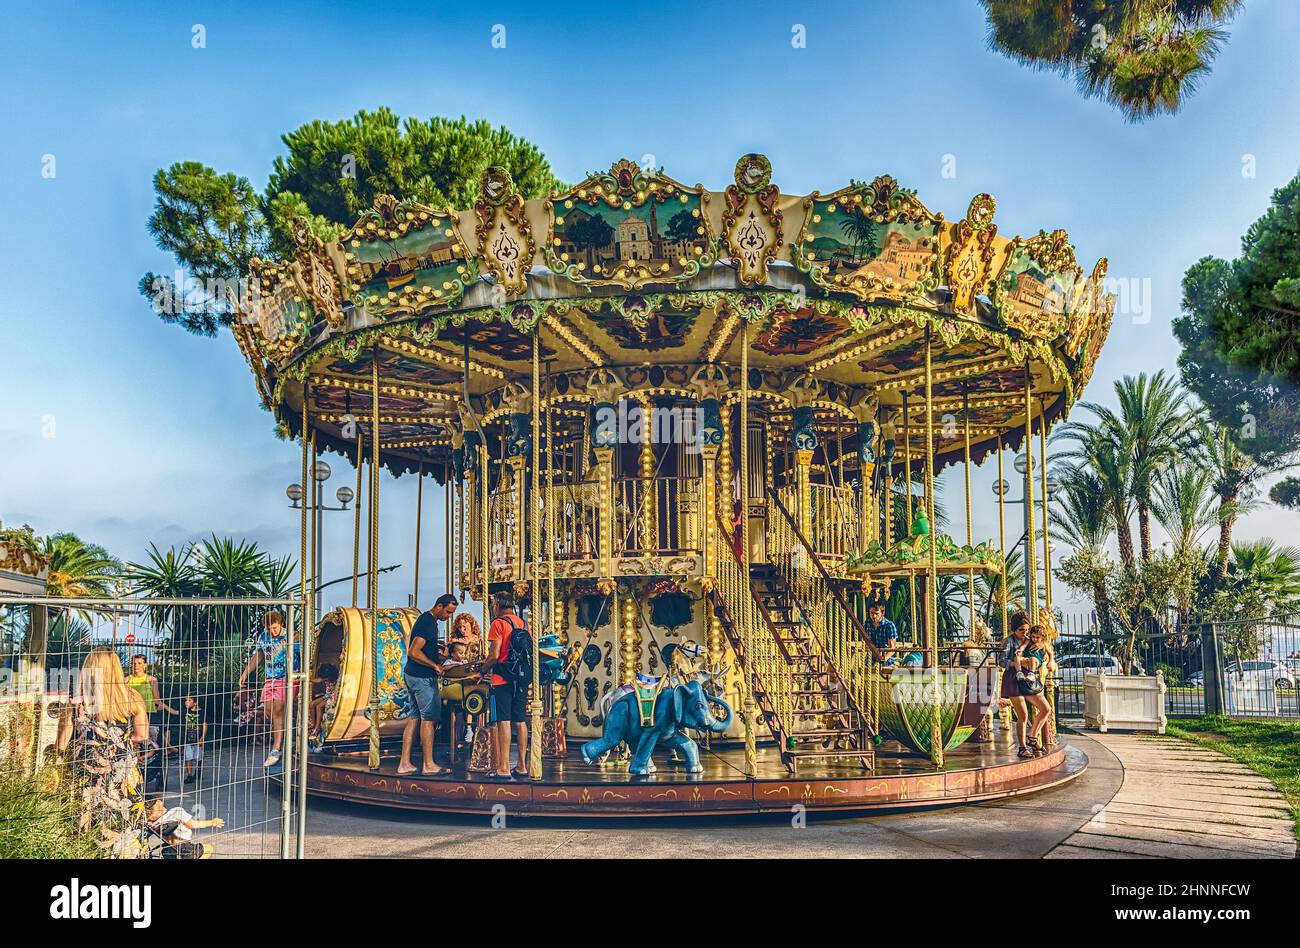 Vintage Carrousel de la Coulee Verte, Nice, Cote d'Azur, France Stock Photo